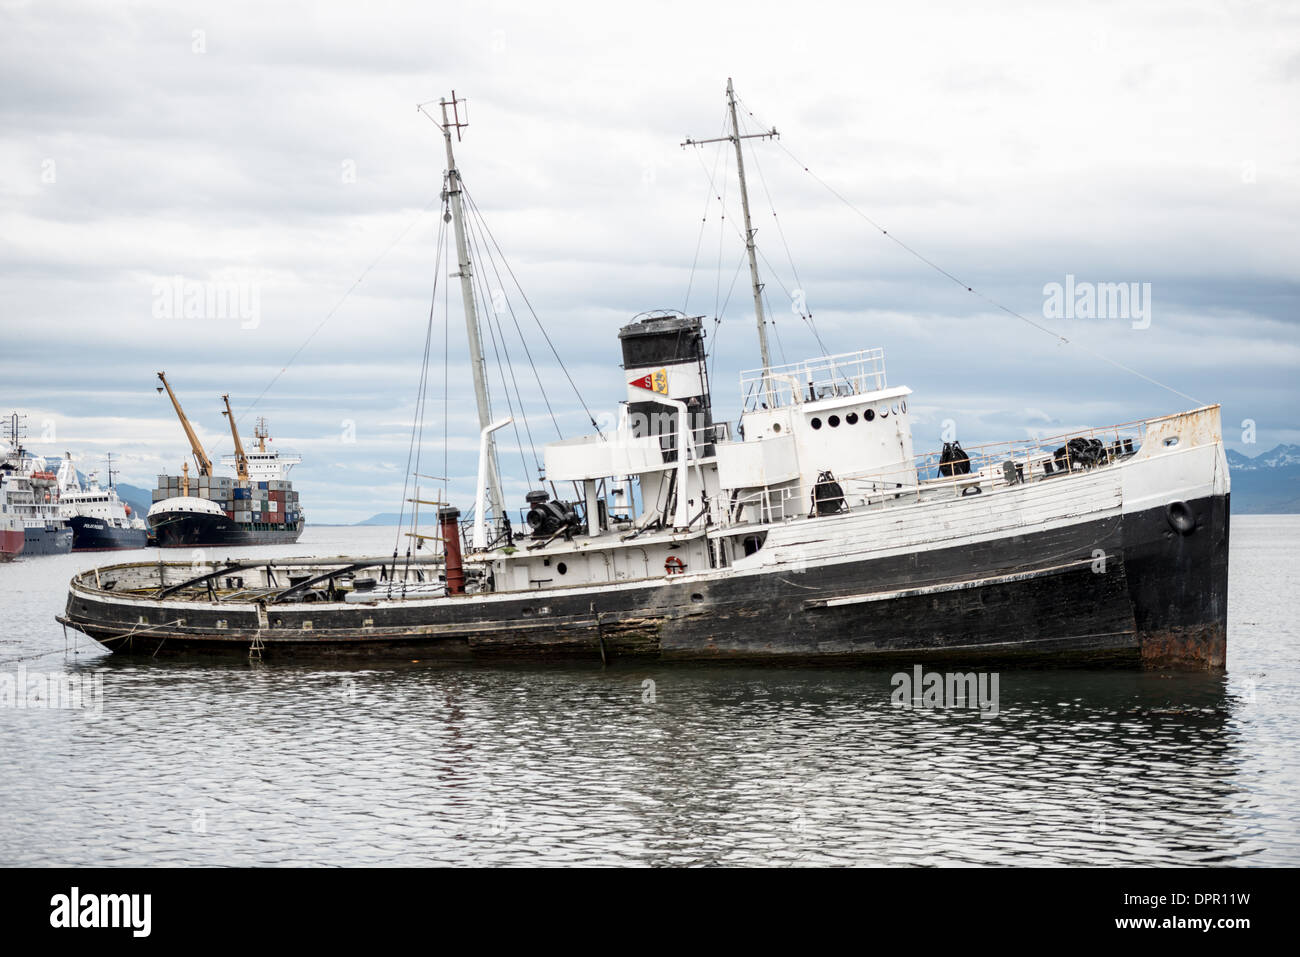 USHUAIA, Argentinien - das Wrack des Heiligen Christopher (HMS Justice) auf Grund im Hafen von Ushuaia, Argentinien. Der Sain Christopher ist ein in den USA gebauter Rettungsschlepper, der im Zweiten Weltkrieg in der britischen Royal Navy diente Nach dem Krieg wurde sie im Royal Nay stillgelegt und zur Bergung im Beagle-Kanal verkauft. Nachdem sie 1954 unter Motorenproblemen gelitten hatte, wurde sie 1957 im Hafen von Ushuaia gestrandet, wo sie heute als Denkmal für die Schiffswracks der Region dient. Eingebettet an der Südspitze Südamerikas ist Ushuaia als die südlichste Stadt der Welt bekannt. Mit Blick auf t Stockfoto